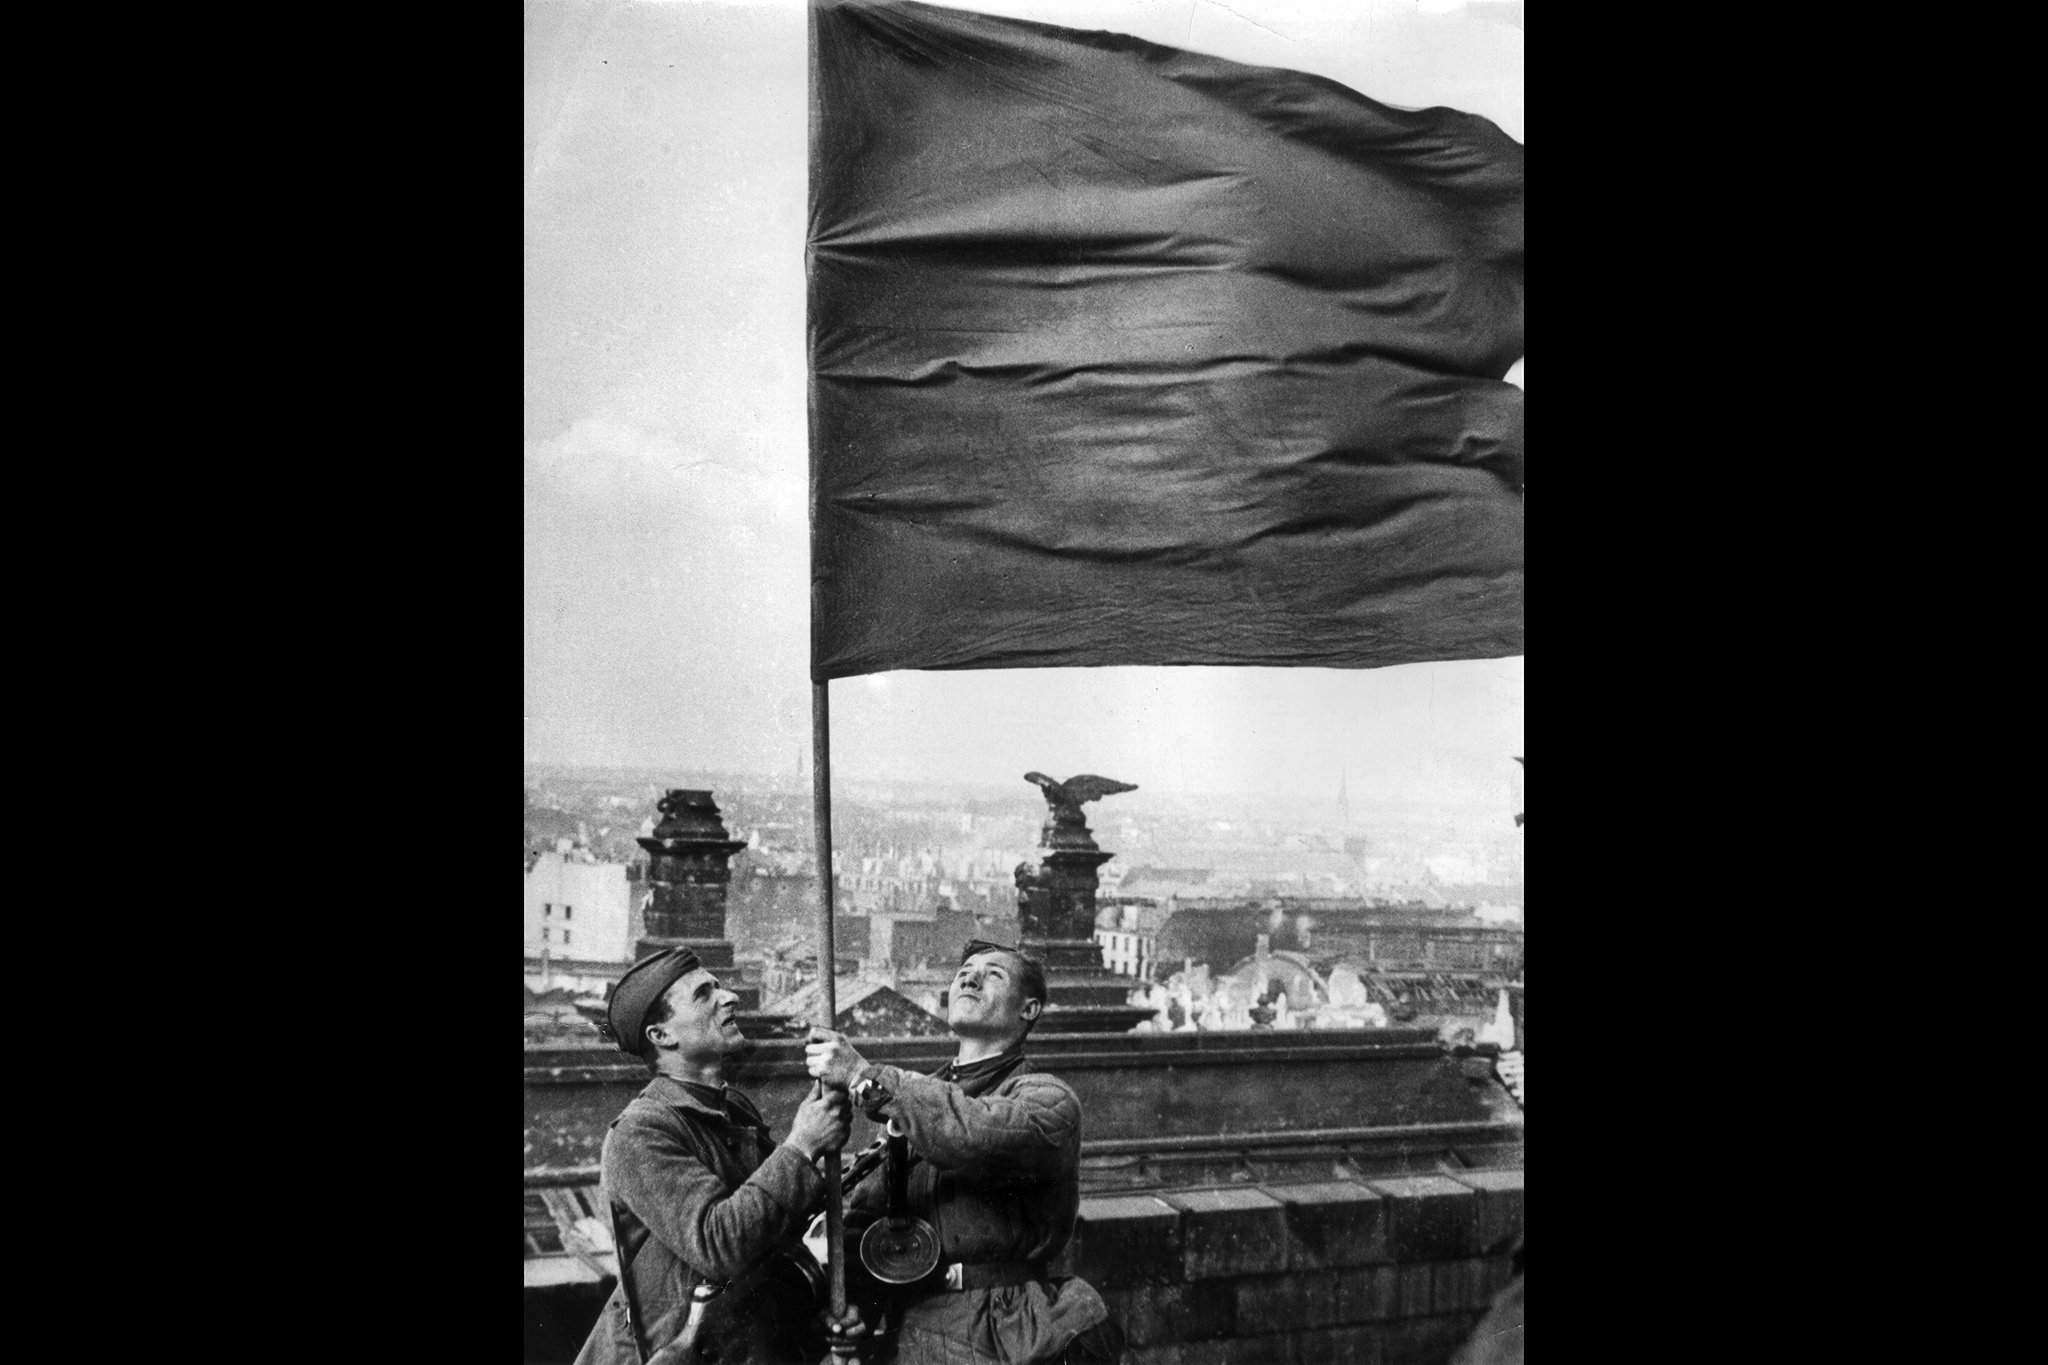 Водружение Знамени Победы 30 апреля 1945